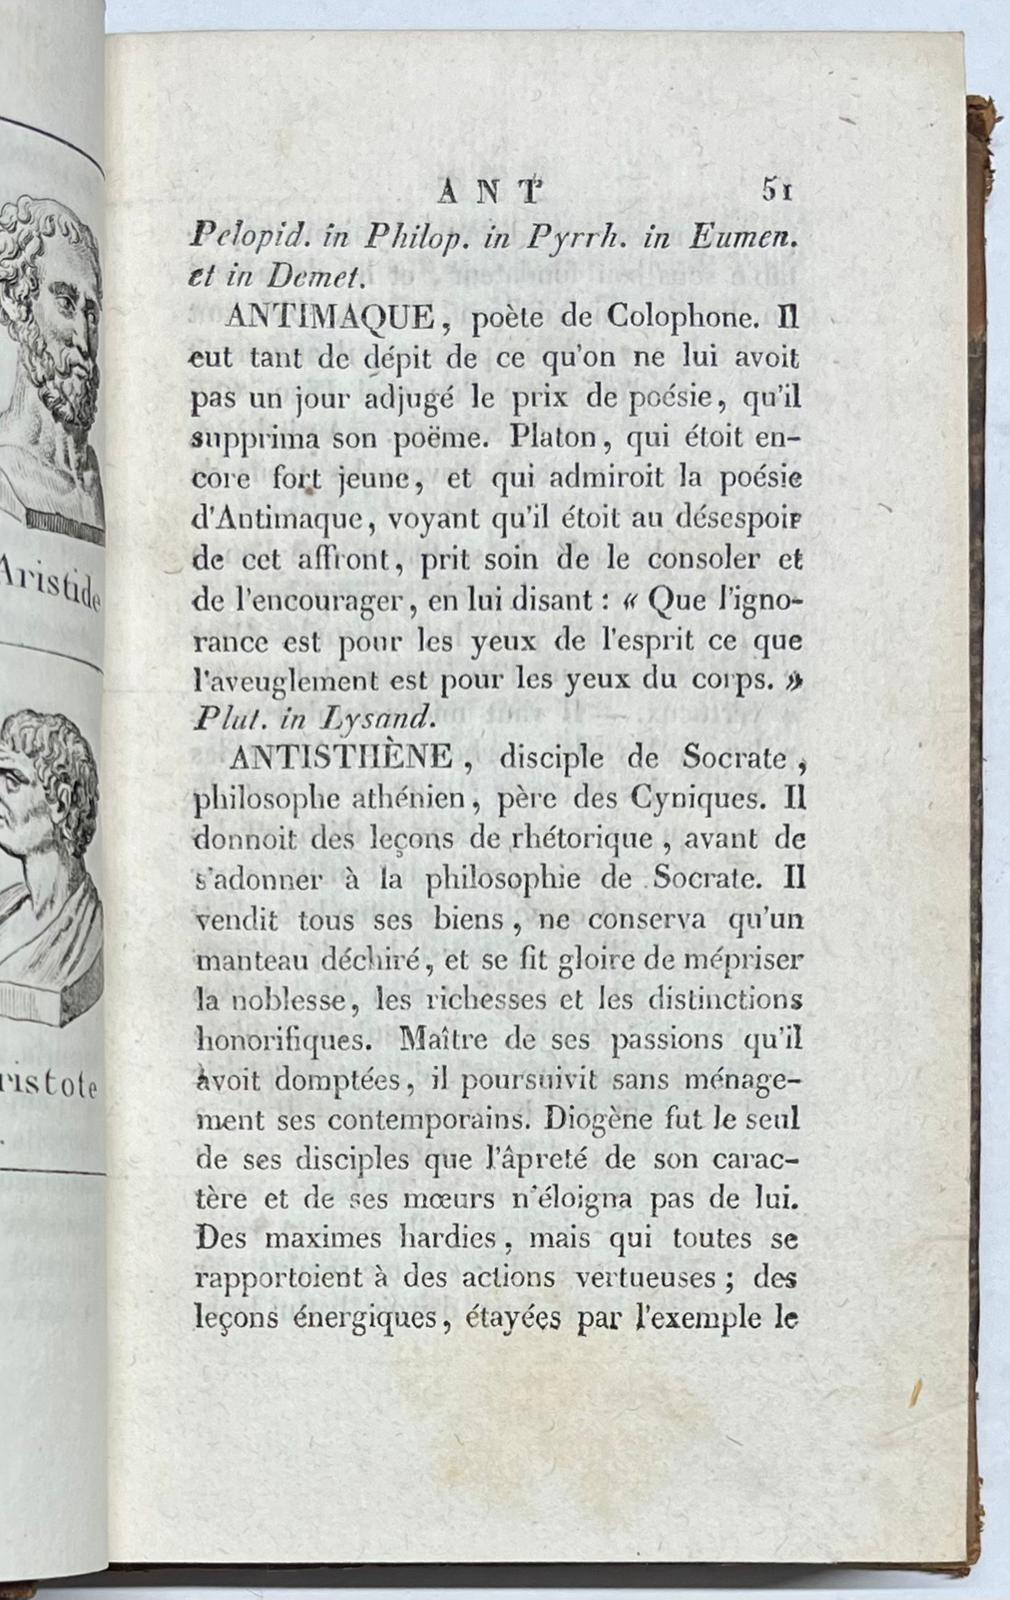 Antiquity, 1822, Biographies | Le Plutarque de l'Enfance, ou Maximes et Traits Historiques extraits des vies des Hommes illustres de Plutarque. Lyon, Jh Janon, 1822, 423 pp.